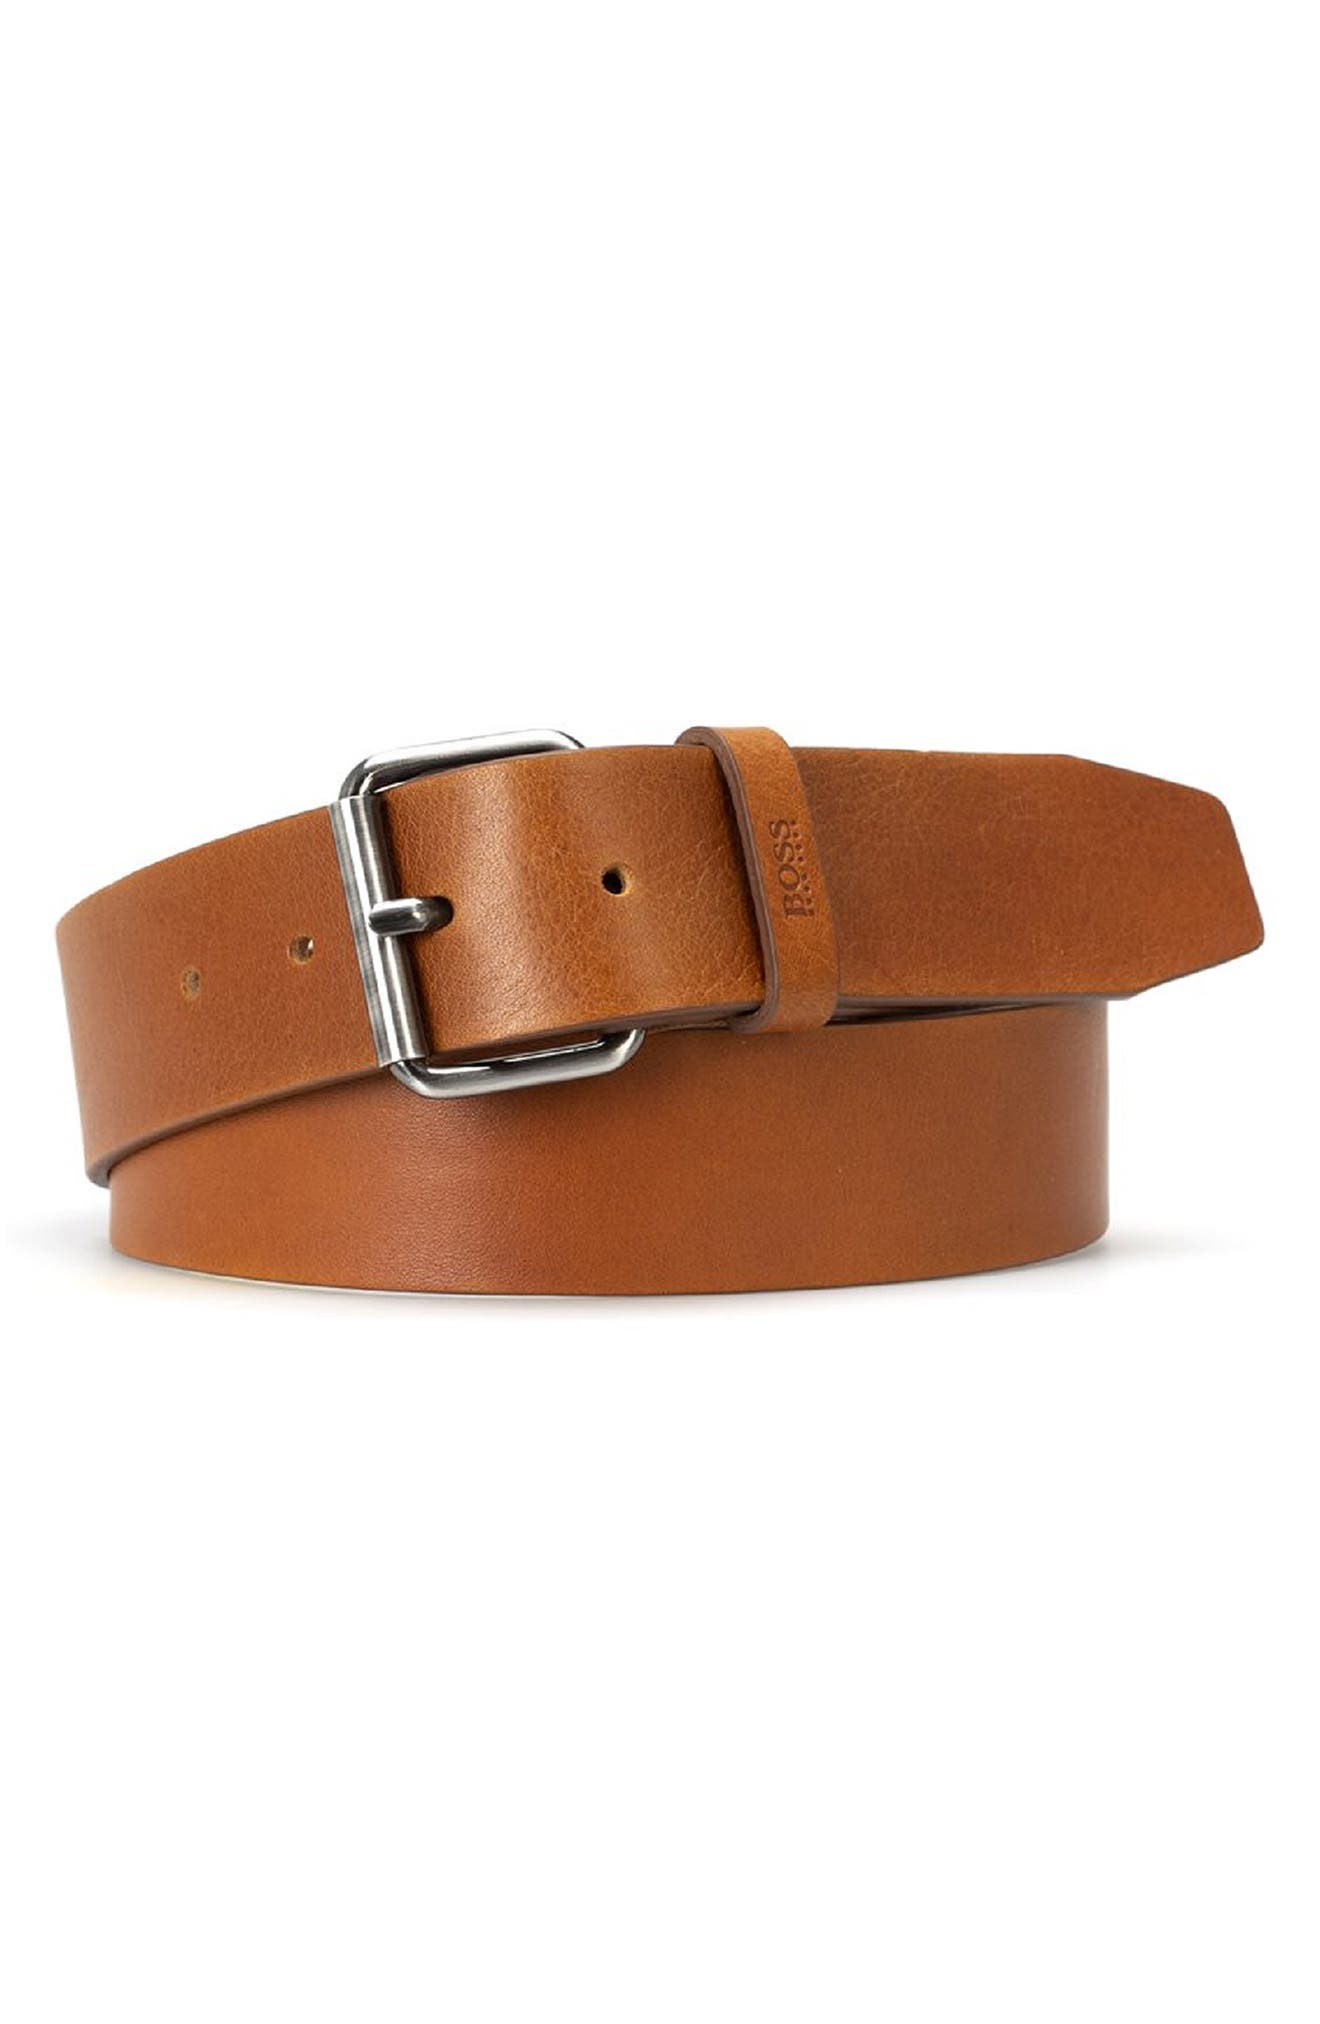 HUGO Serge Leather Belt in Medium Brown at Nordstrom, Size 40